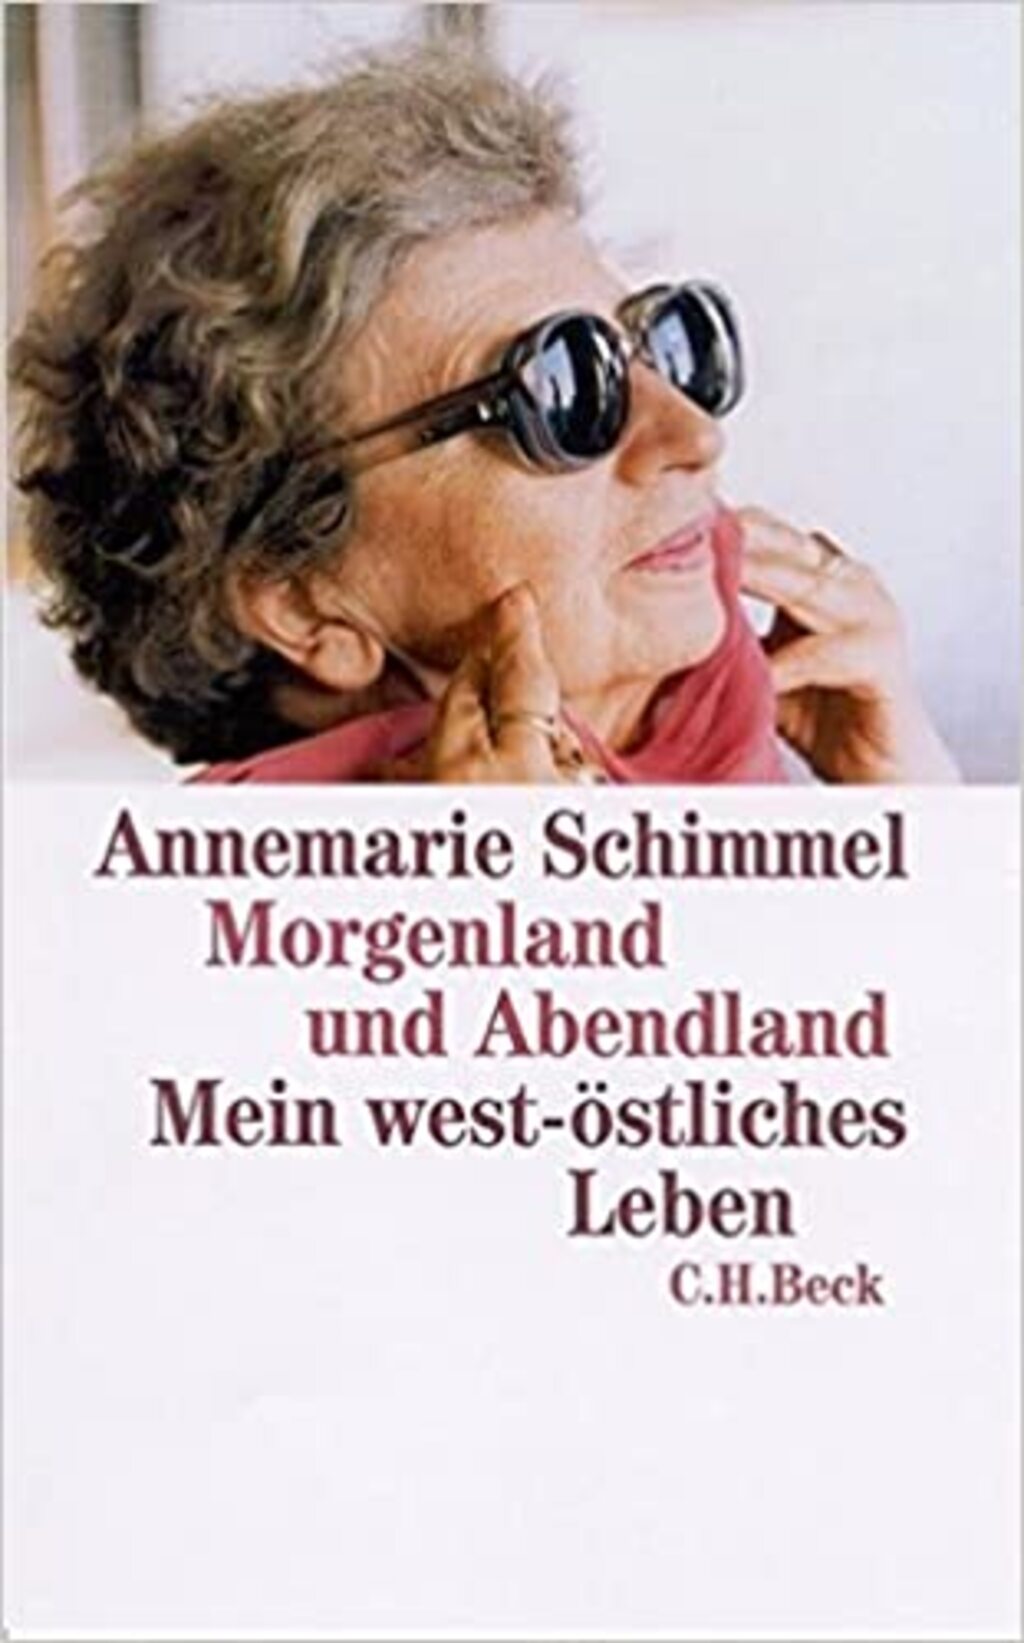 Cover of Annemarie Schimmel's "Morgenland und Abendland. Mein west-östliches Leben", published in German by CH Beck (source: CH Beck)